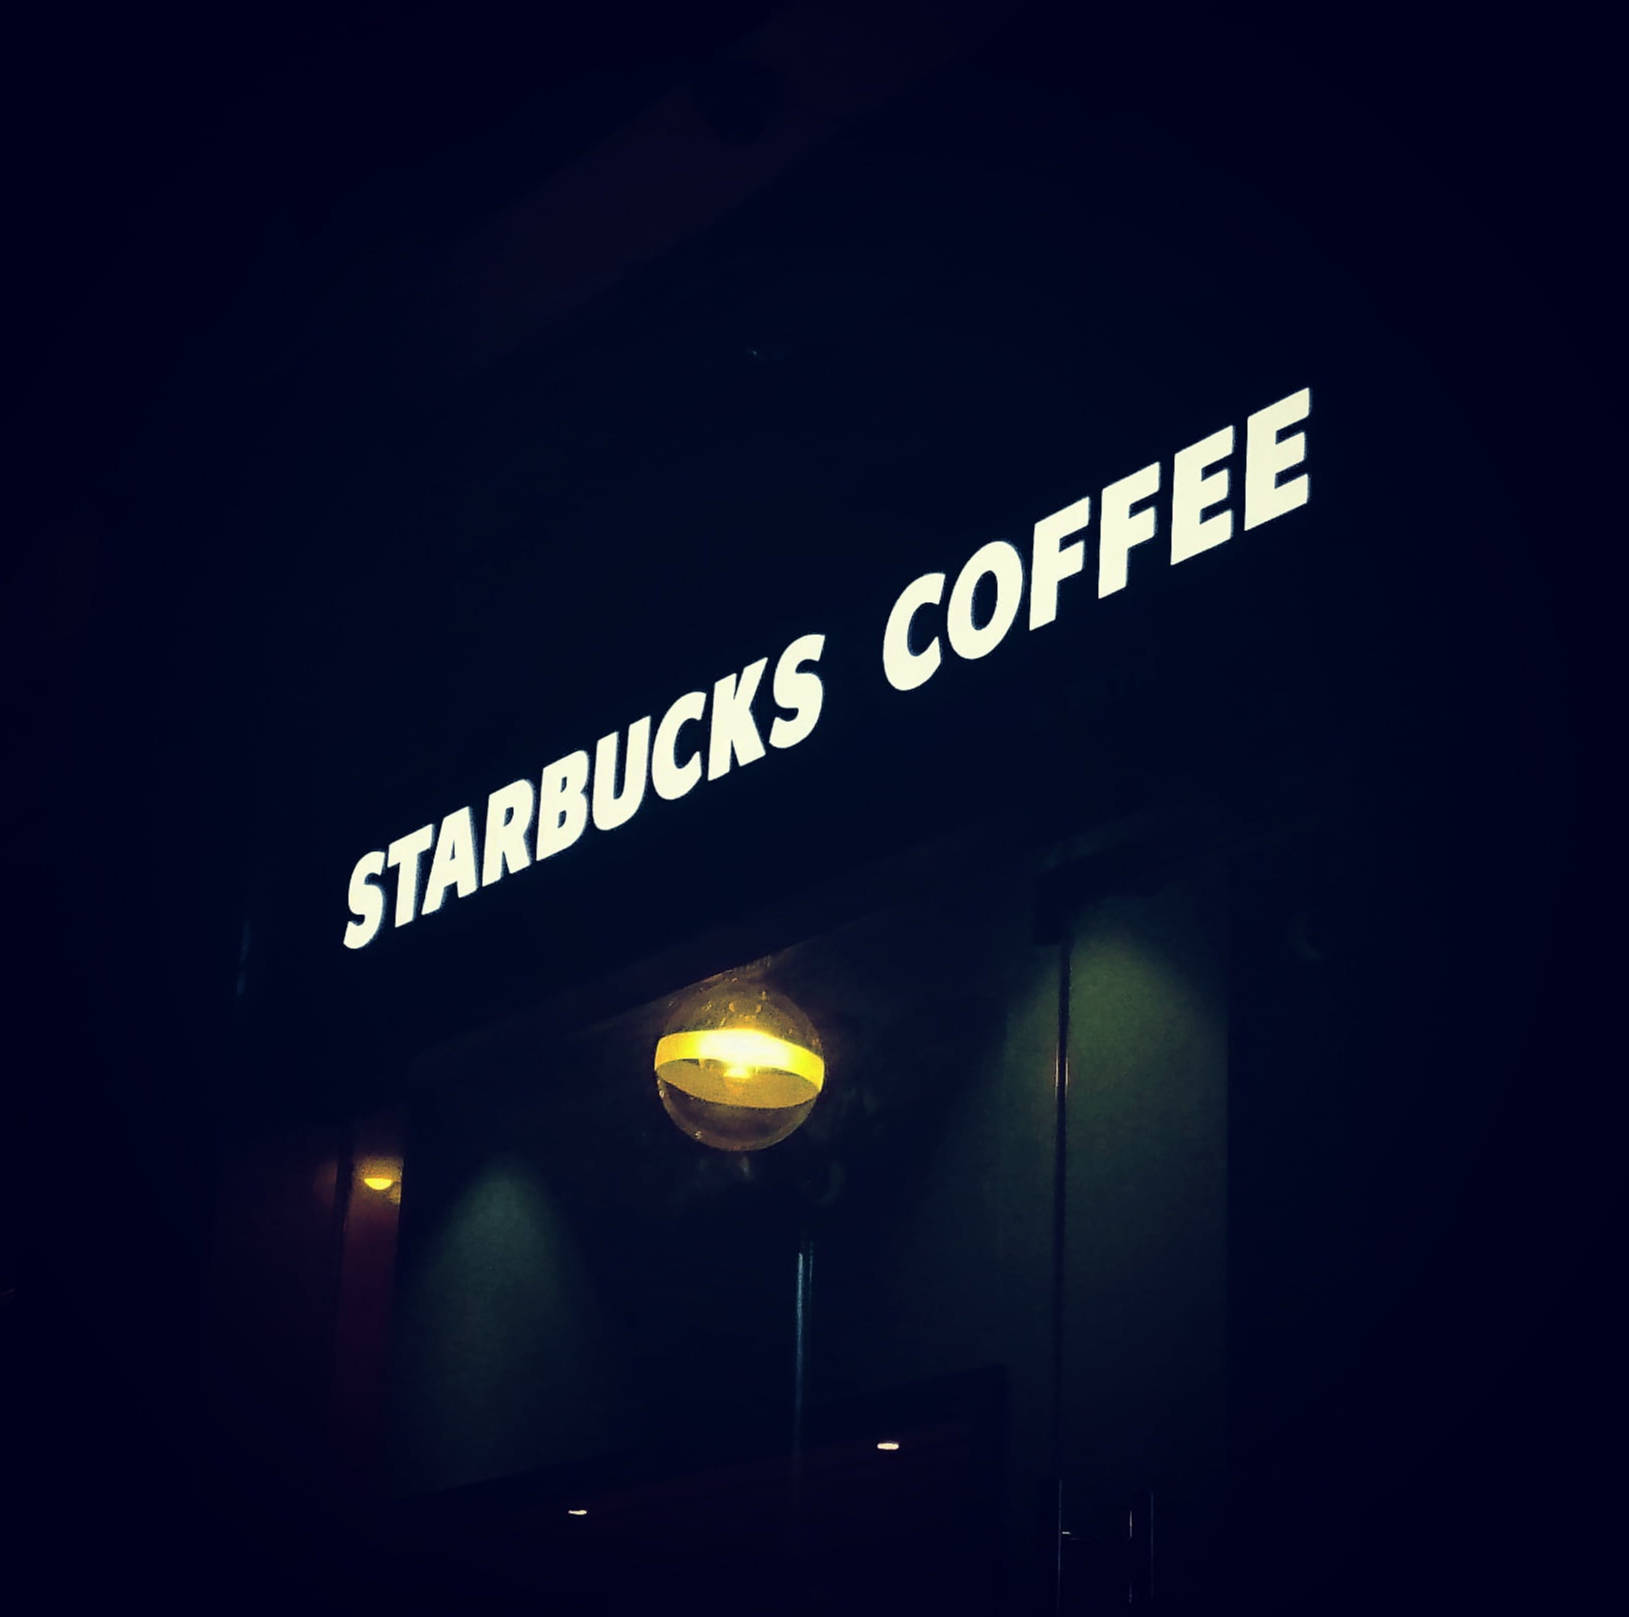 Starbucks Shop Led Signage Background